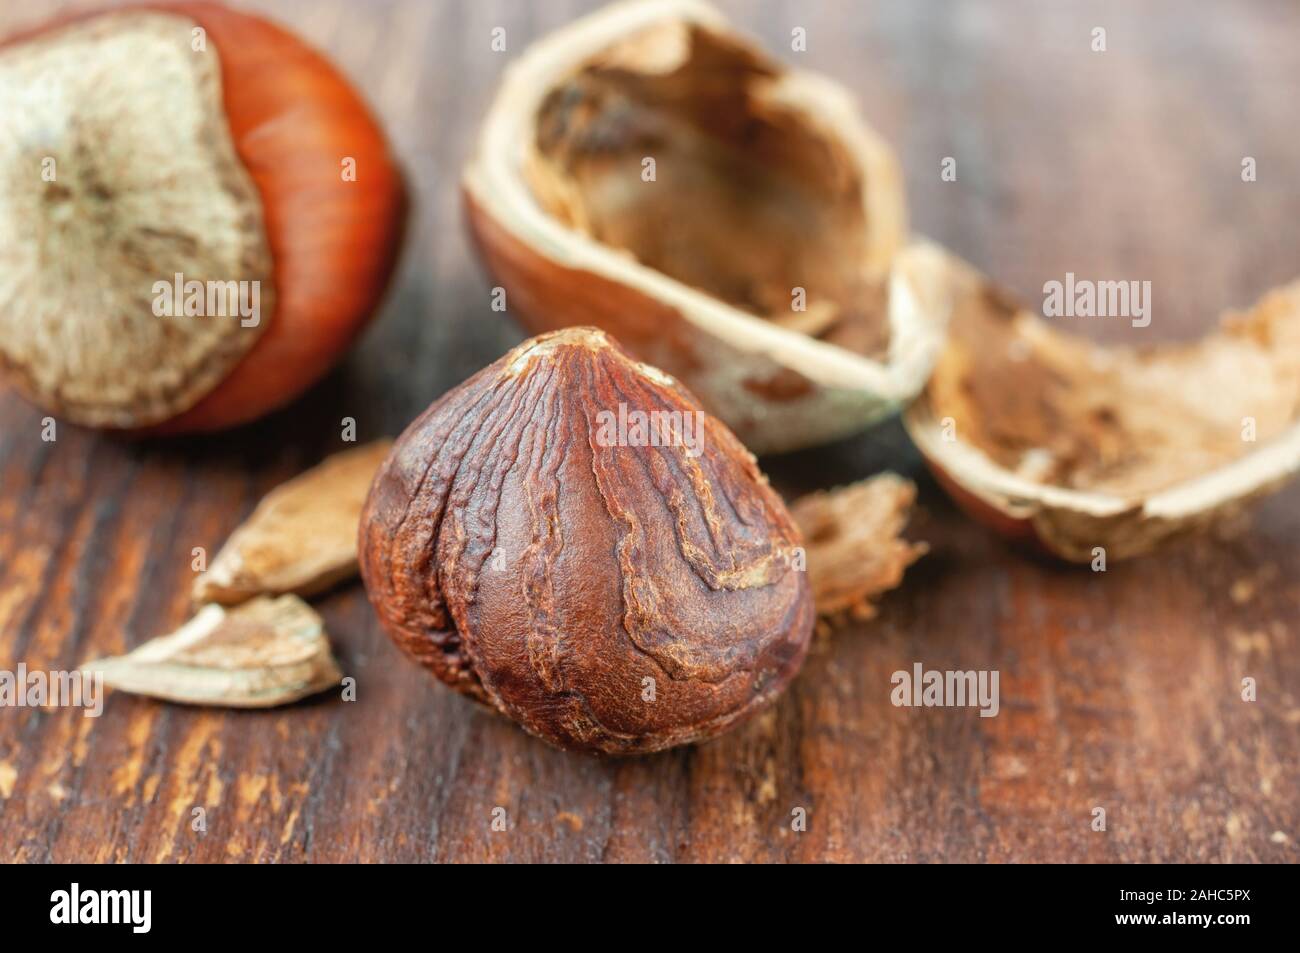 Hazelnut on wooden background Stock Photo